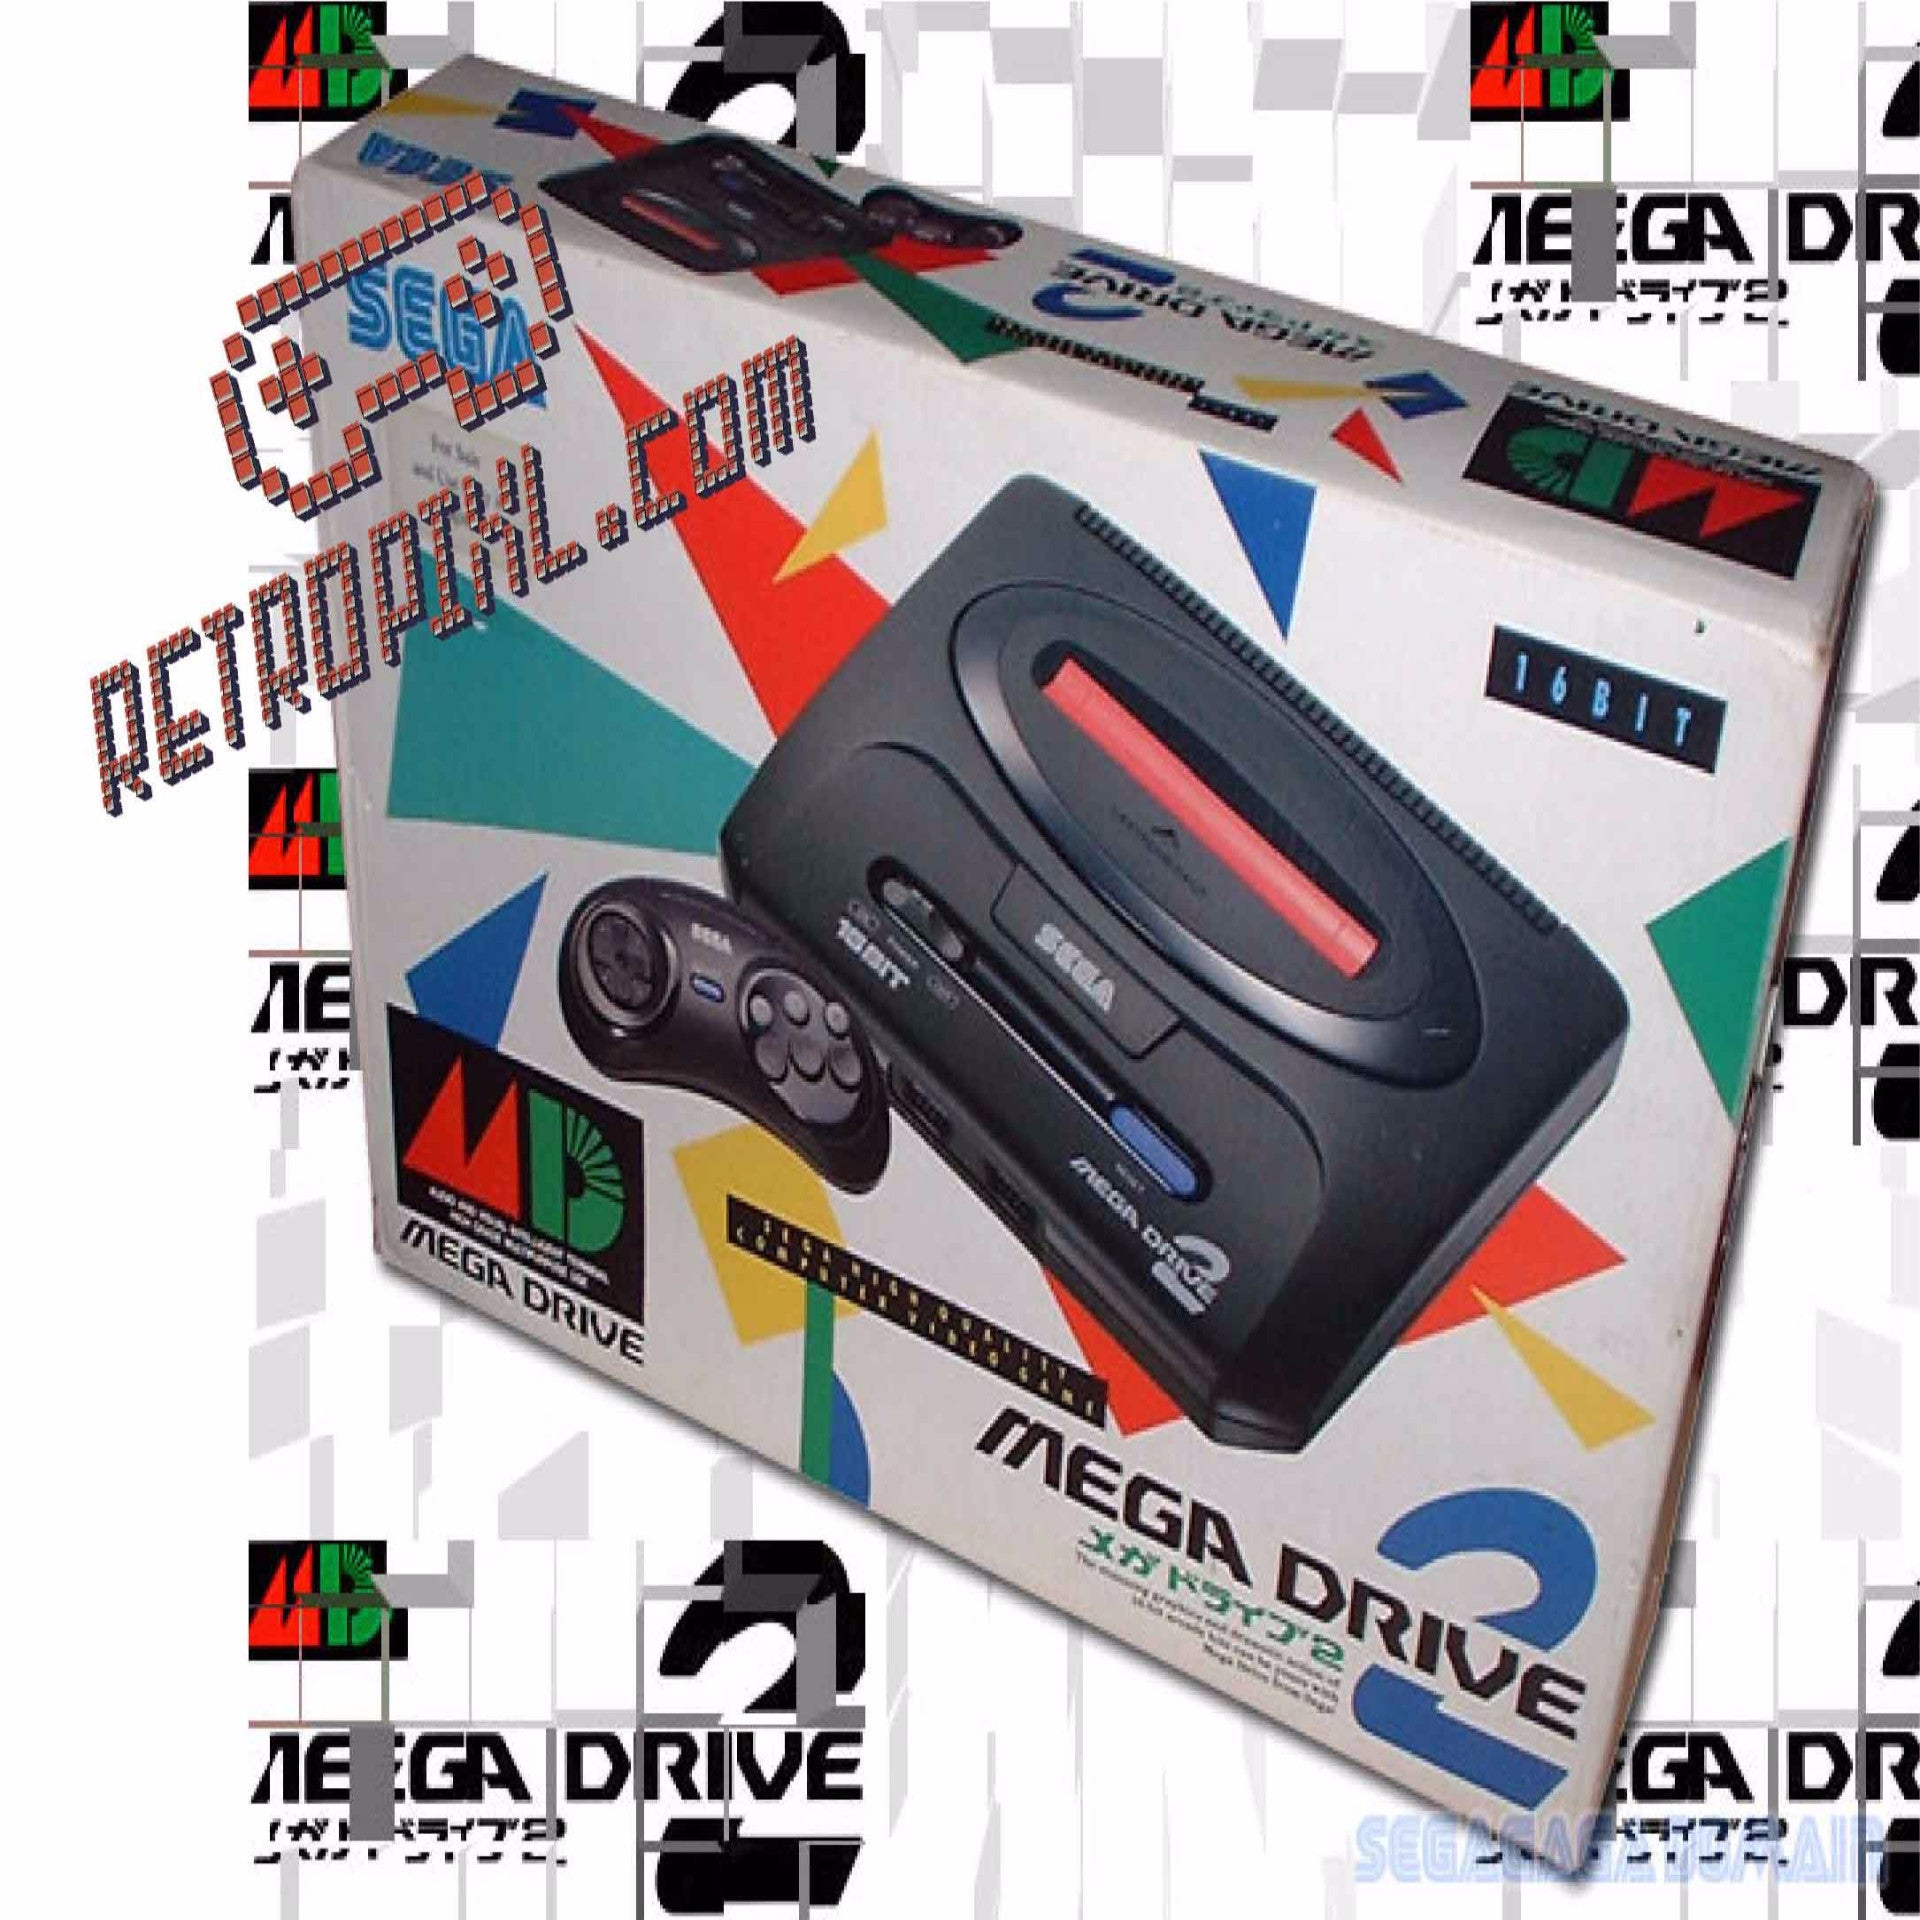 Australian Sega Mega Drive II Game System with Original Box & Inserts -  Genesis